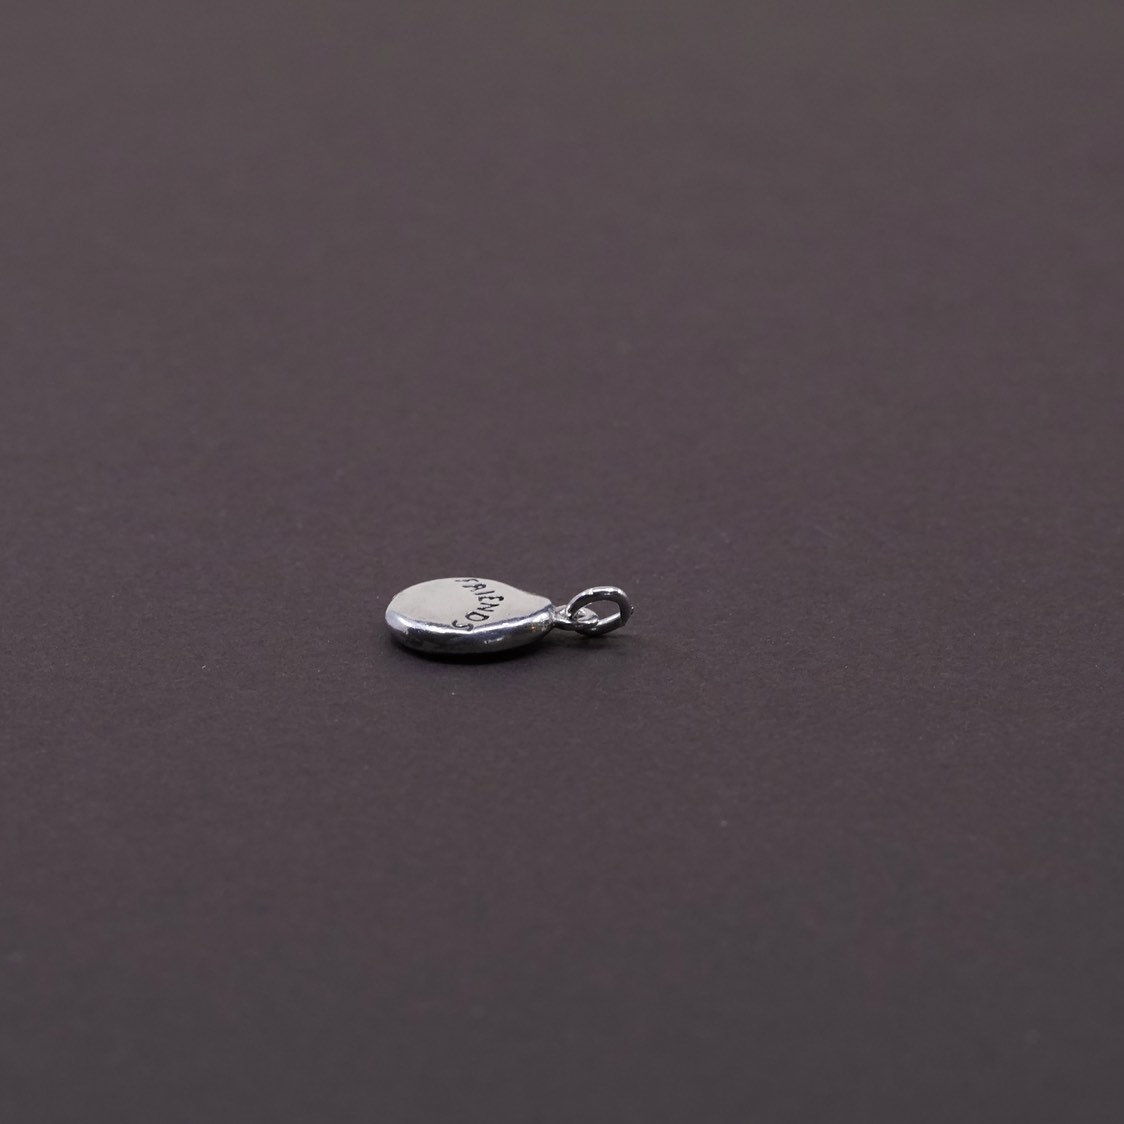 vtg Sterling silver handmade charm, 925 "best friend" charm pendant